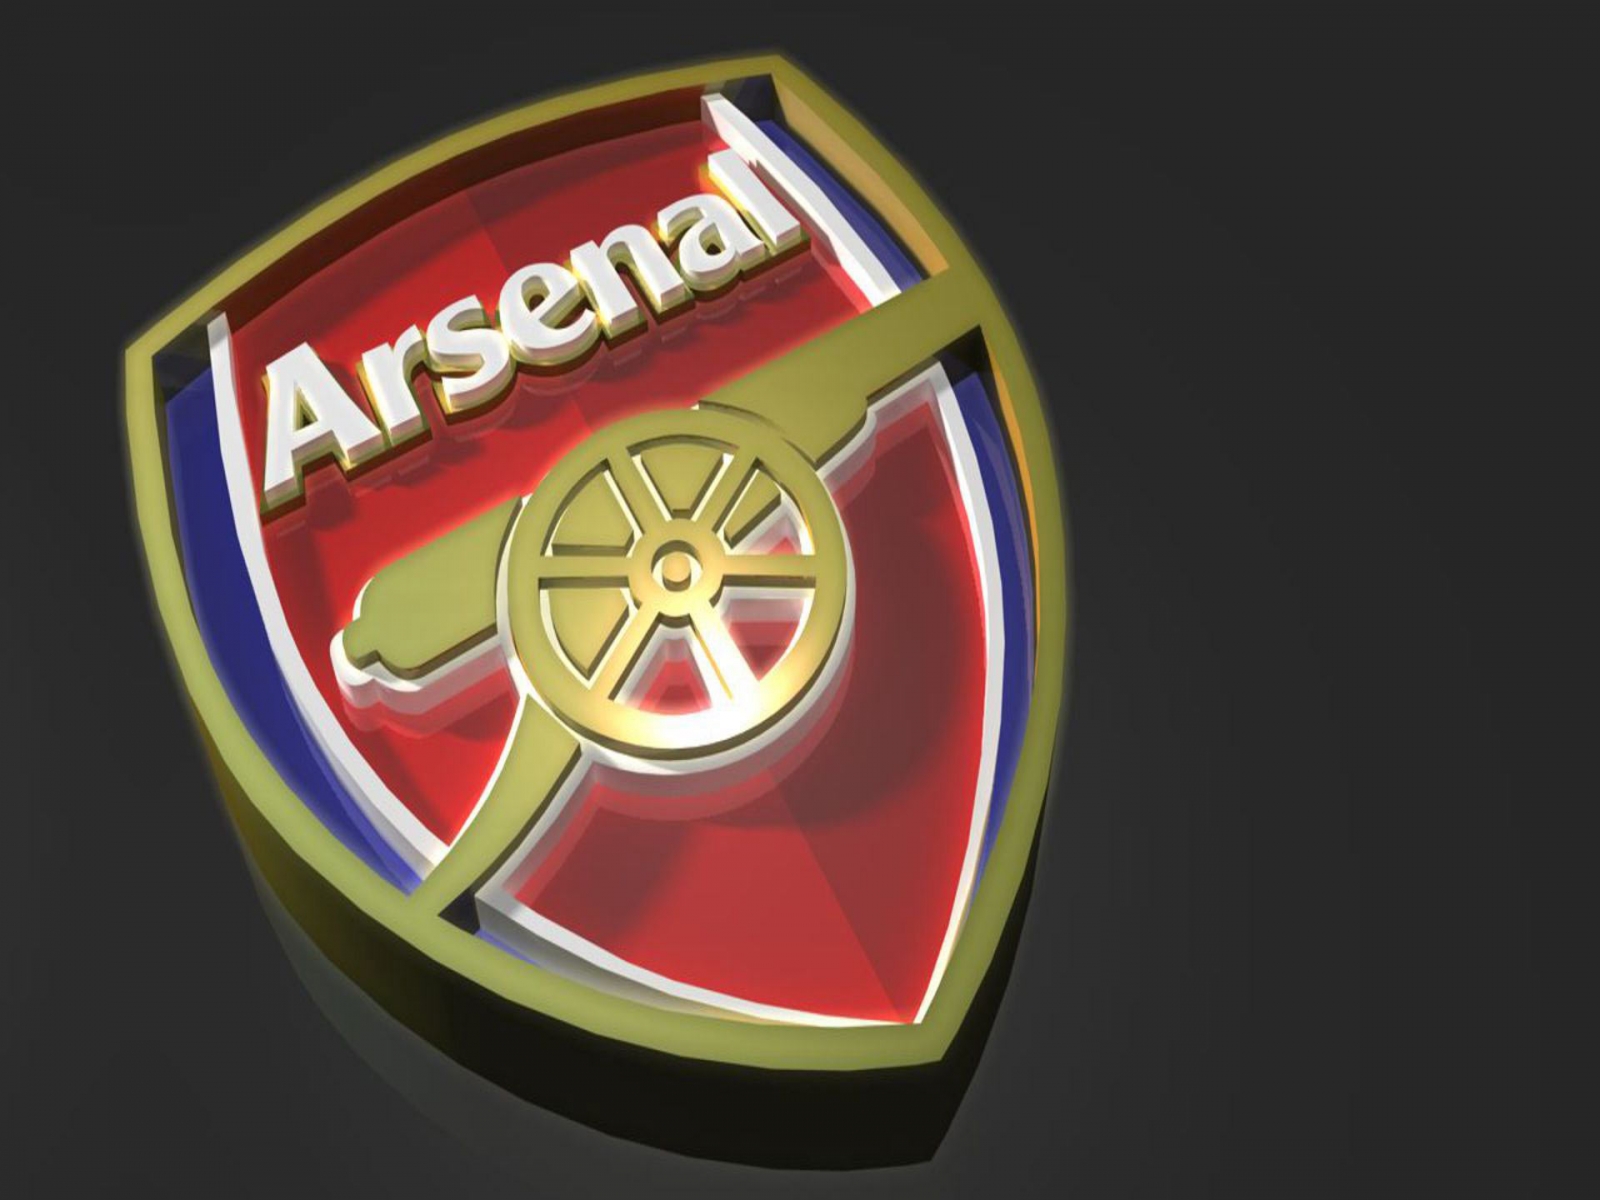 Arsenal Fc Logo Arsenal 201314 Outlook The Center Circle A